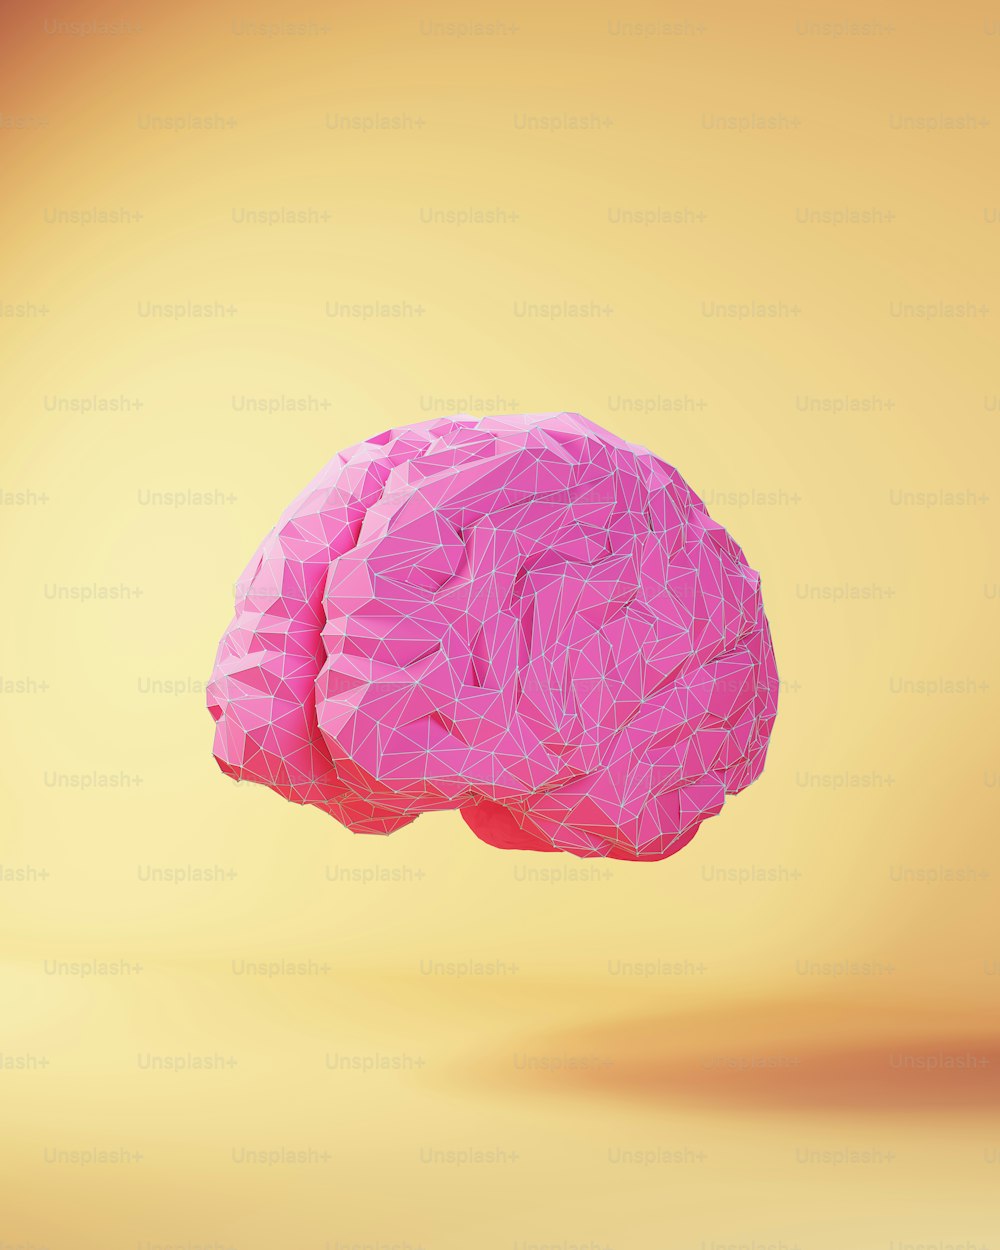 Pink Künstliche Intelligenz Gehirn Konzept Forschung Innovation Neuronale Netze KI Ethik Daten Cyborg Robotik 3D-Illustration Rendering